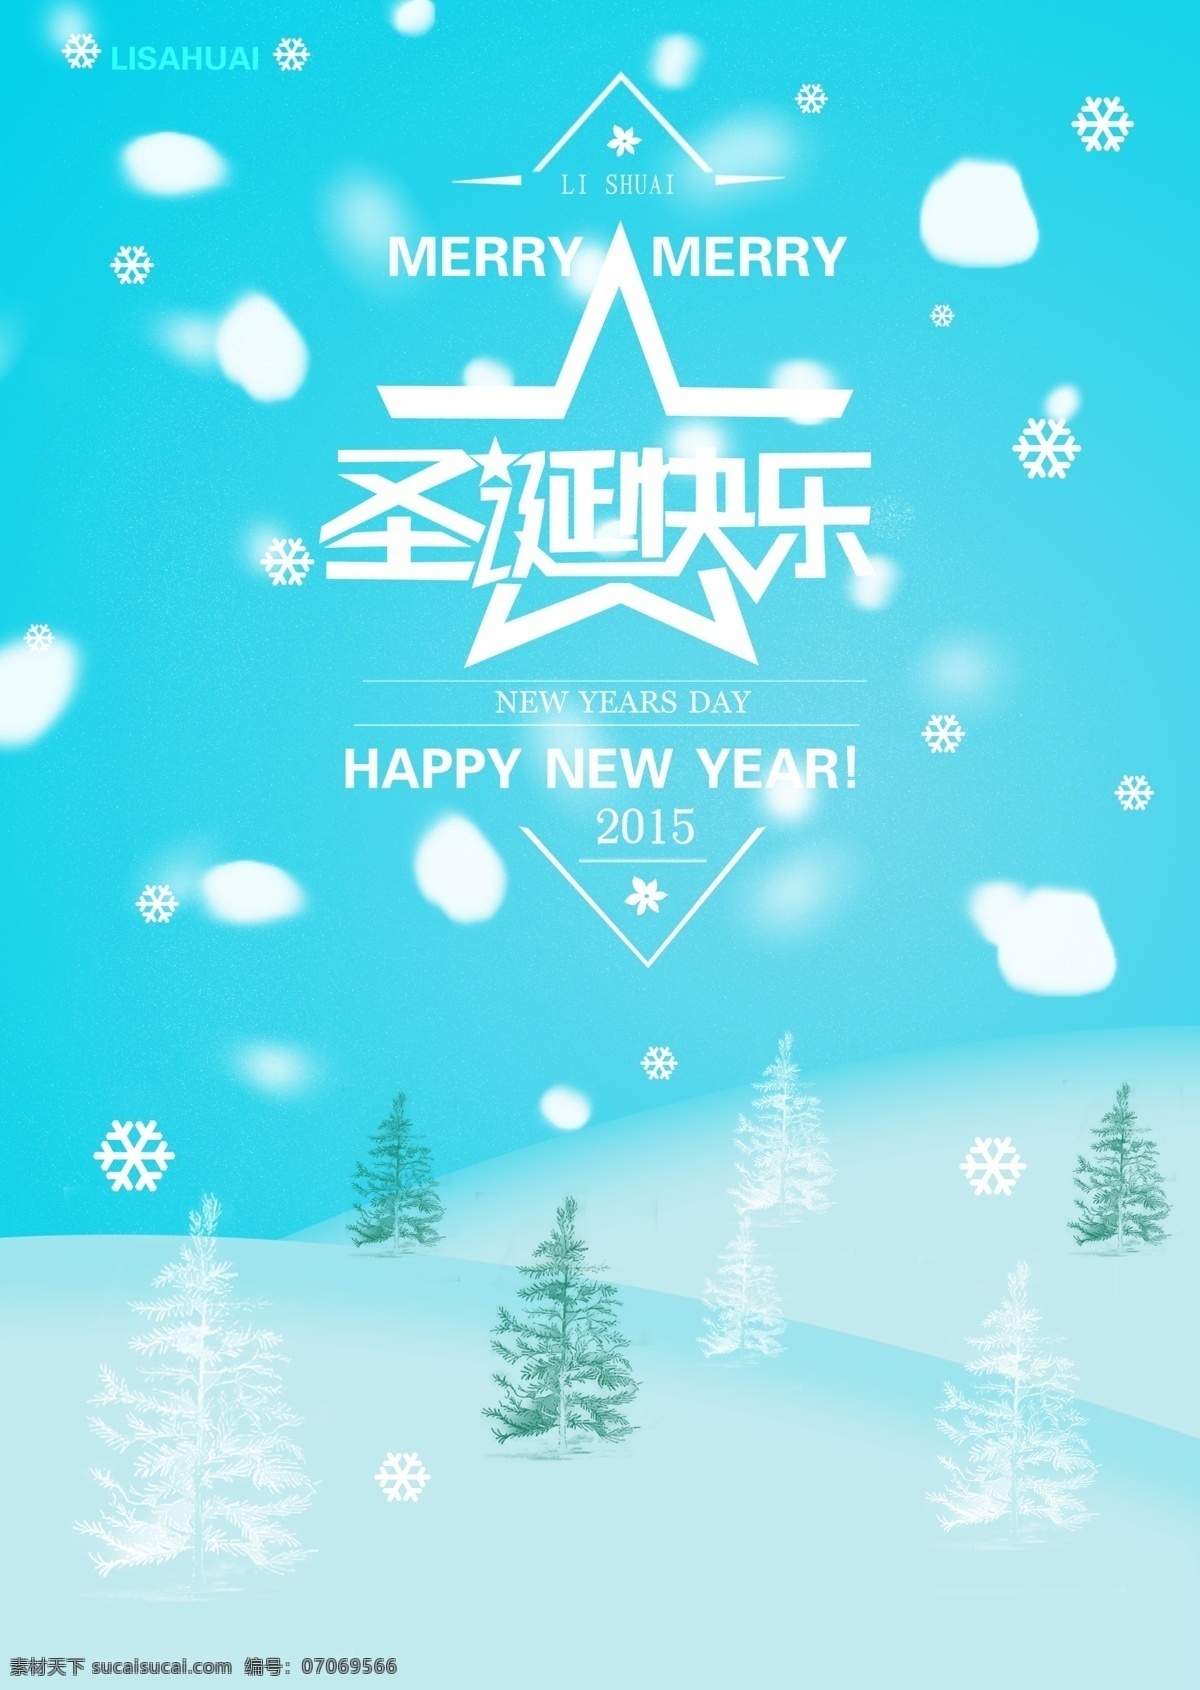 圣诞快乐 新年快乐 雪花 李帅 喜欢你 忘情 原创设计 原创海报